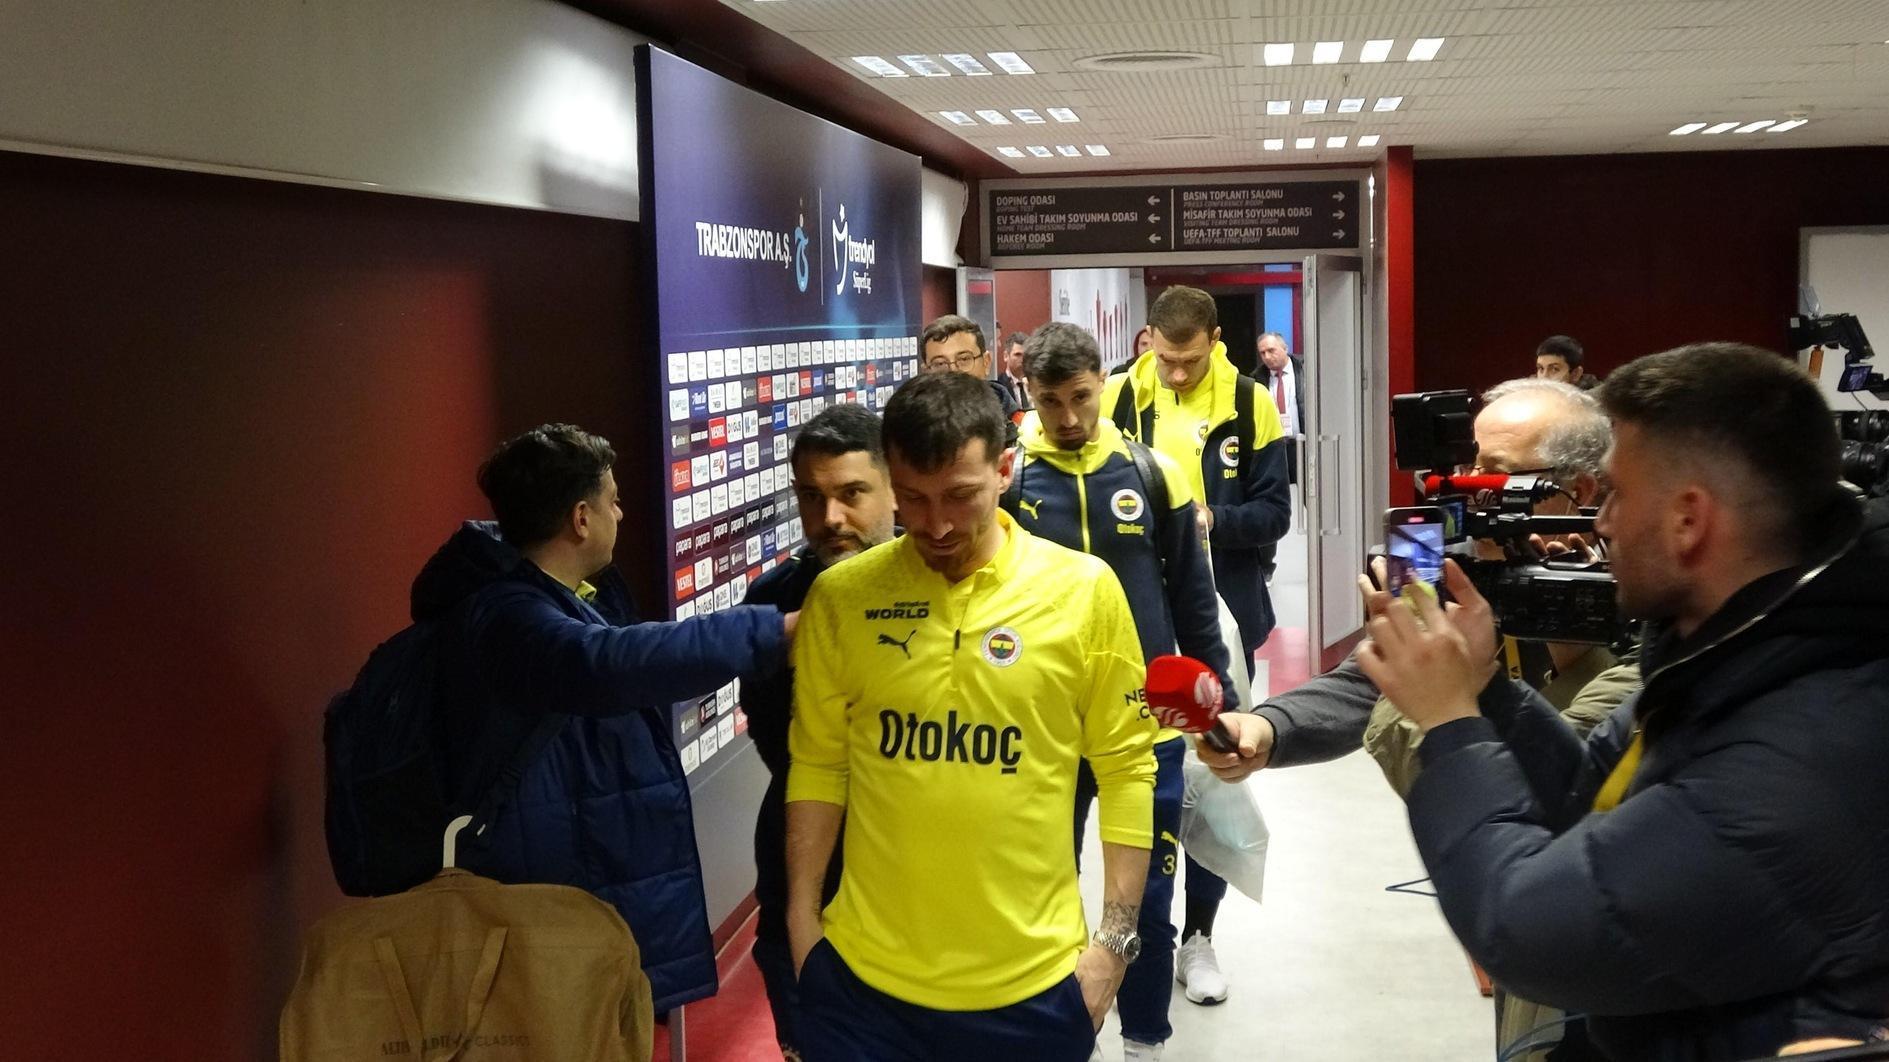 Fenerbahçe 'overweegt' terugtrekking uit de Süper Lig